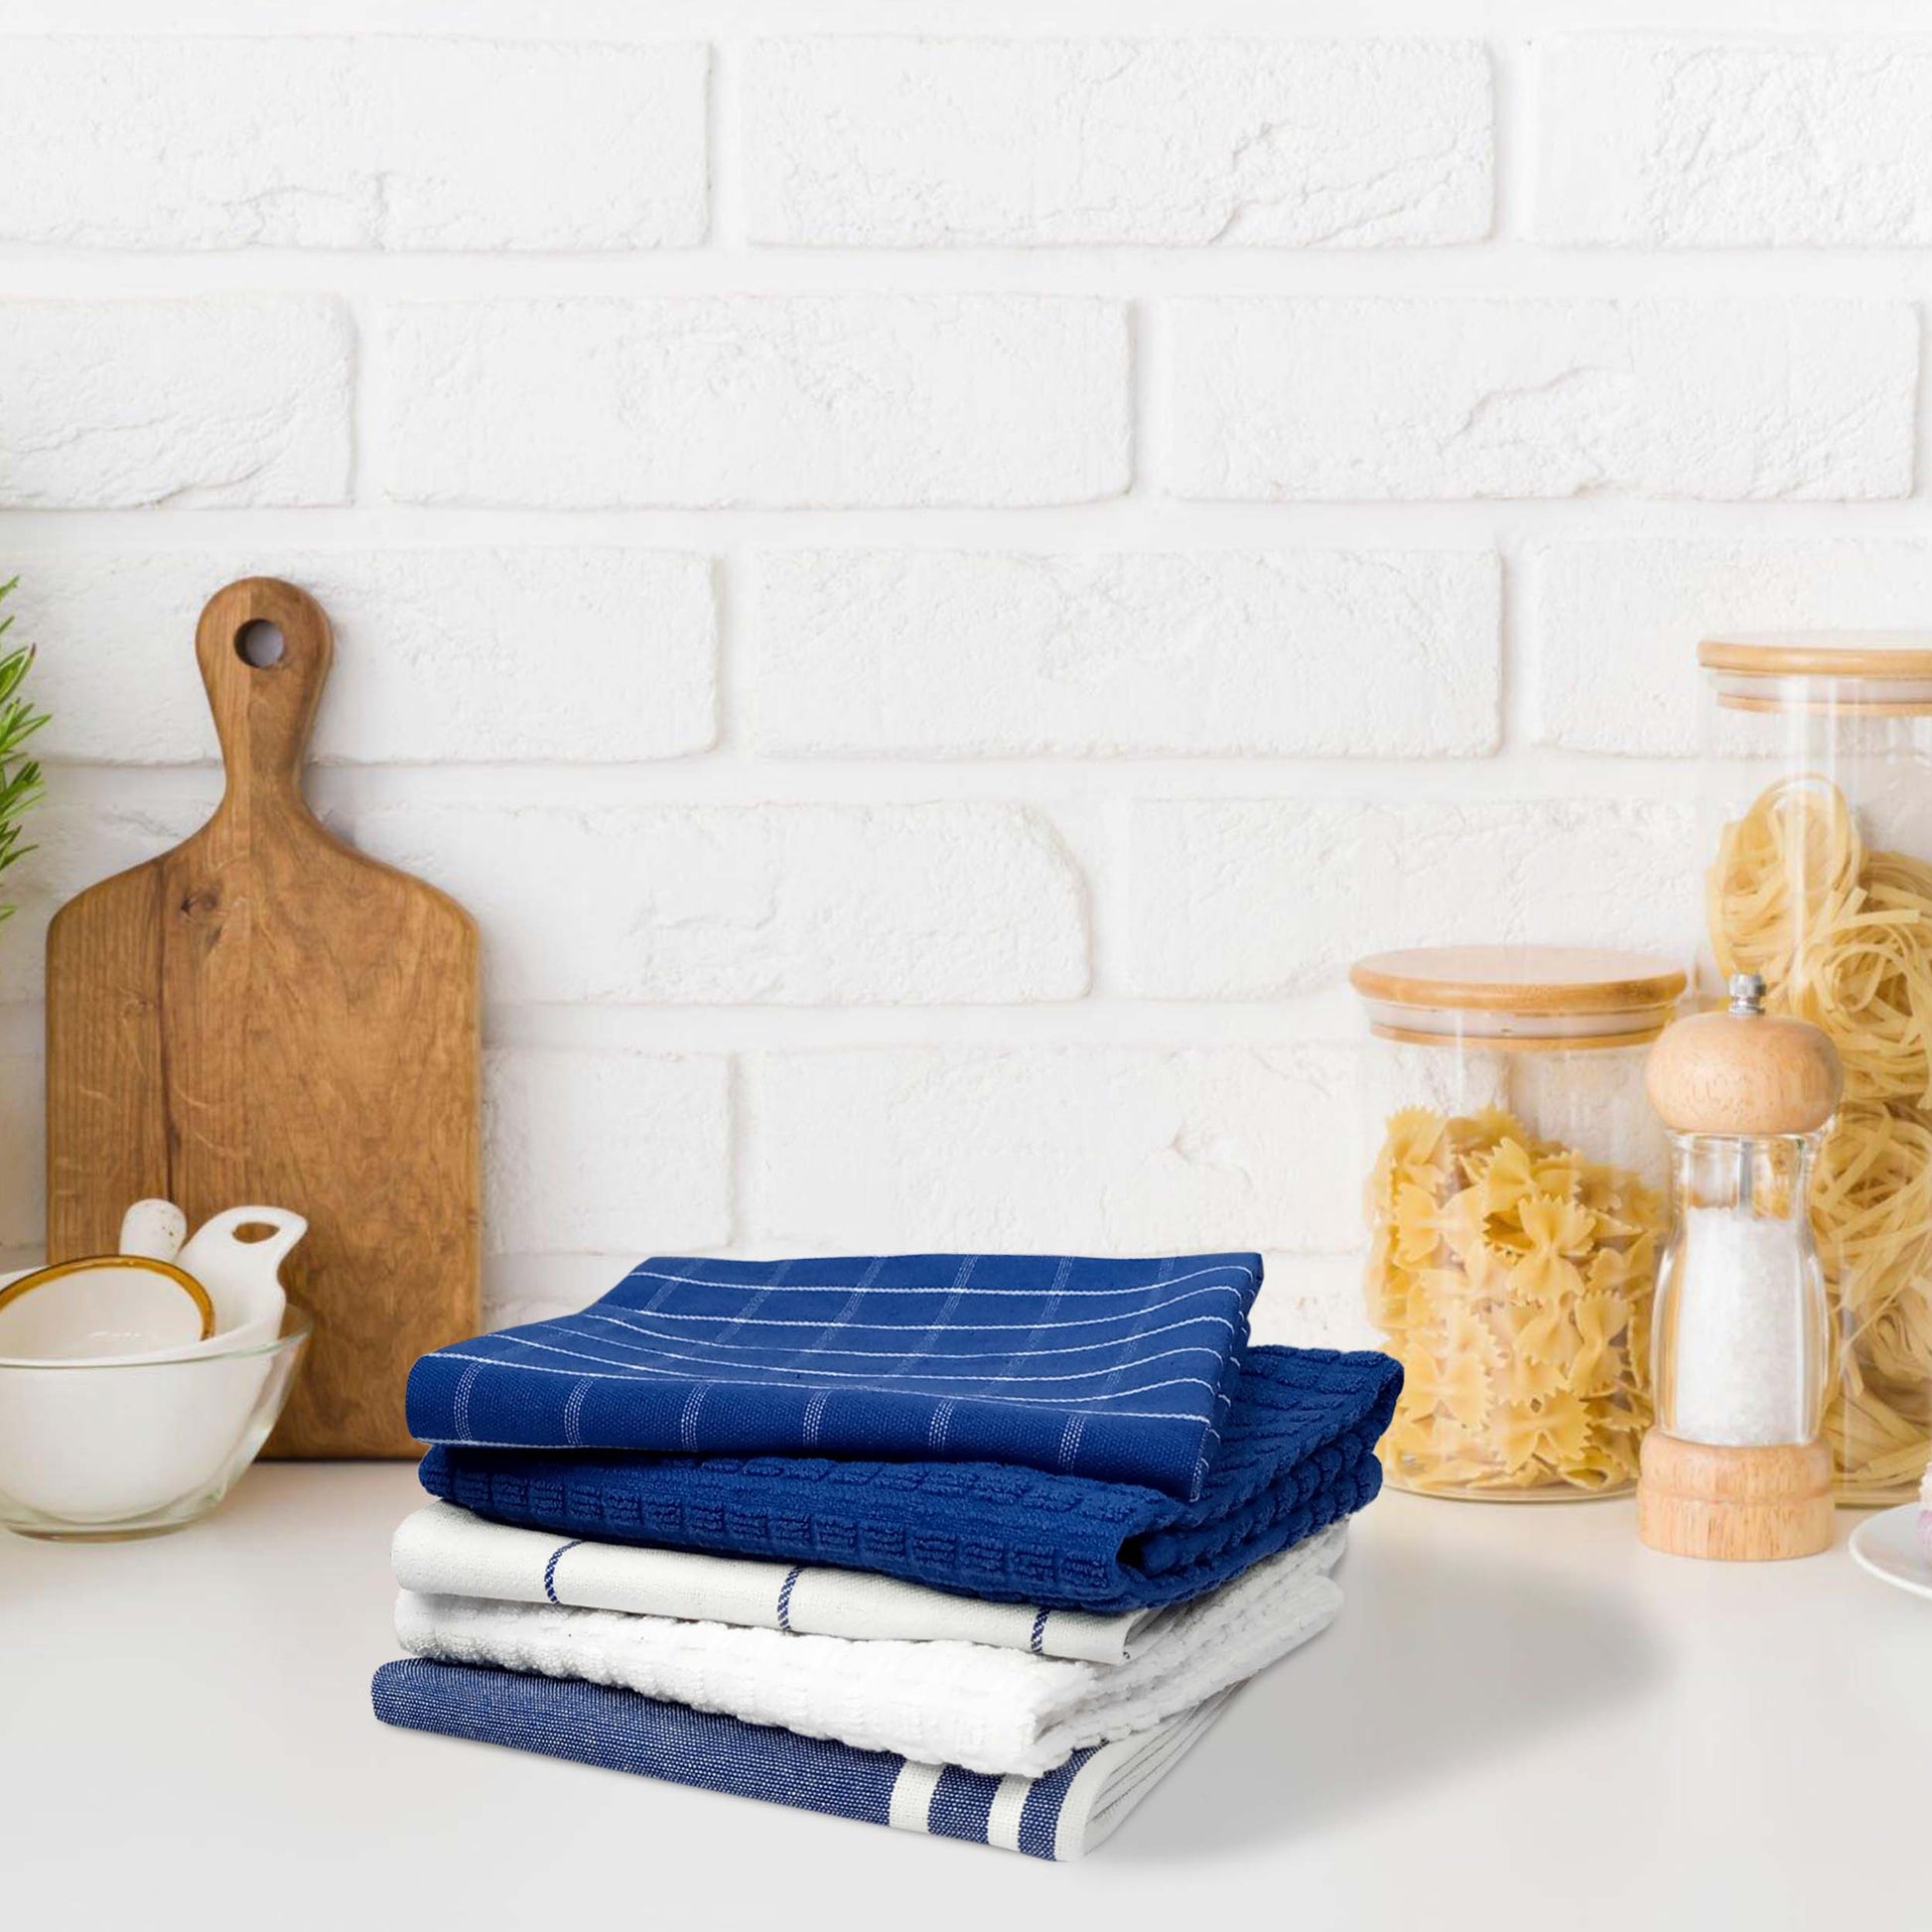 Hanging Hand Towel, Loop Hand Towel for Oven Door, Kitchen, Laundry,  Bathroom, Caravan, Boat. Australian Themes Animal Plants. Tea Towel 